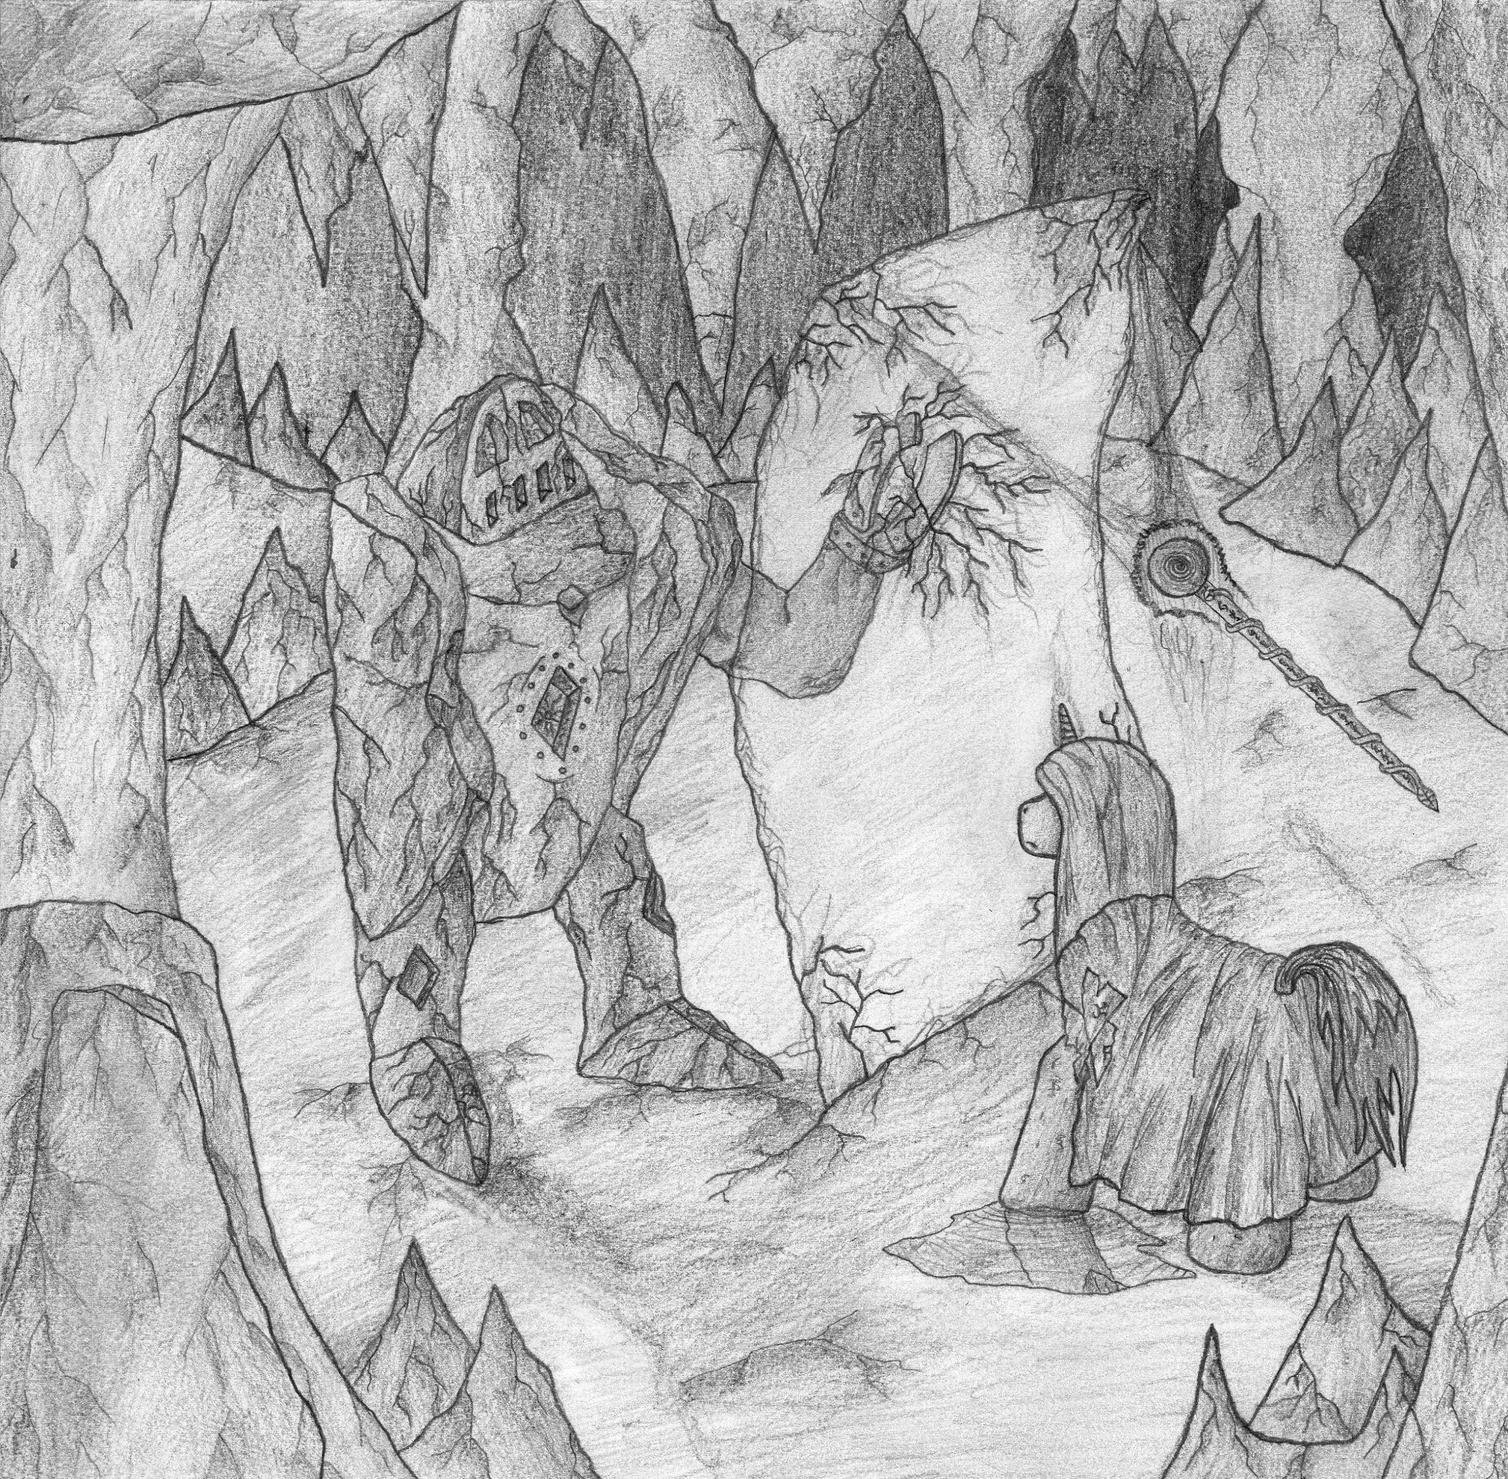 Иллюстрация к сюите пер Гюнт в пещере горного короля